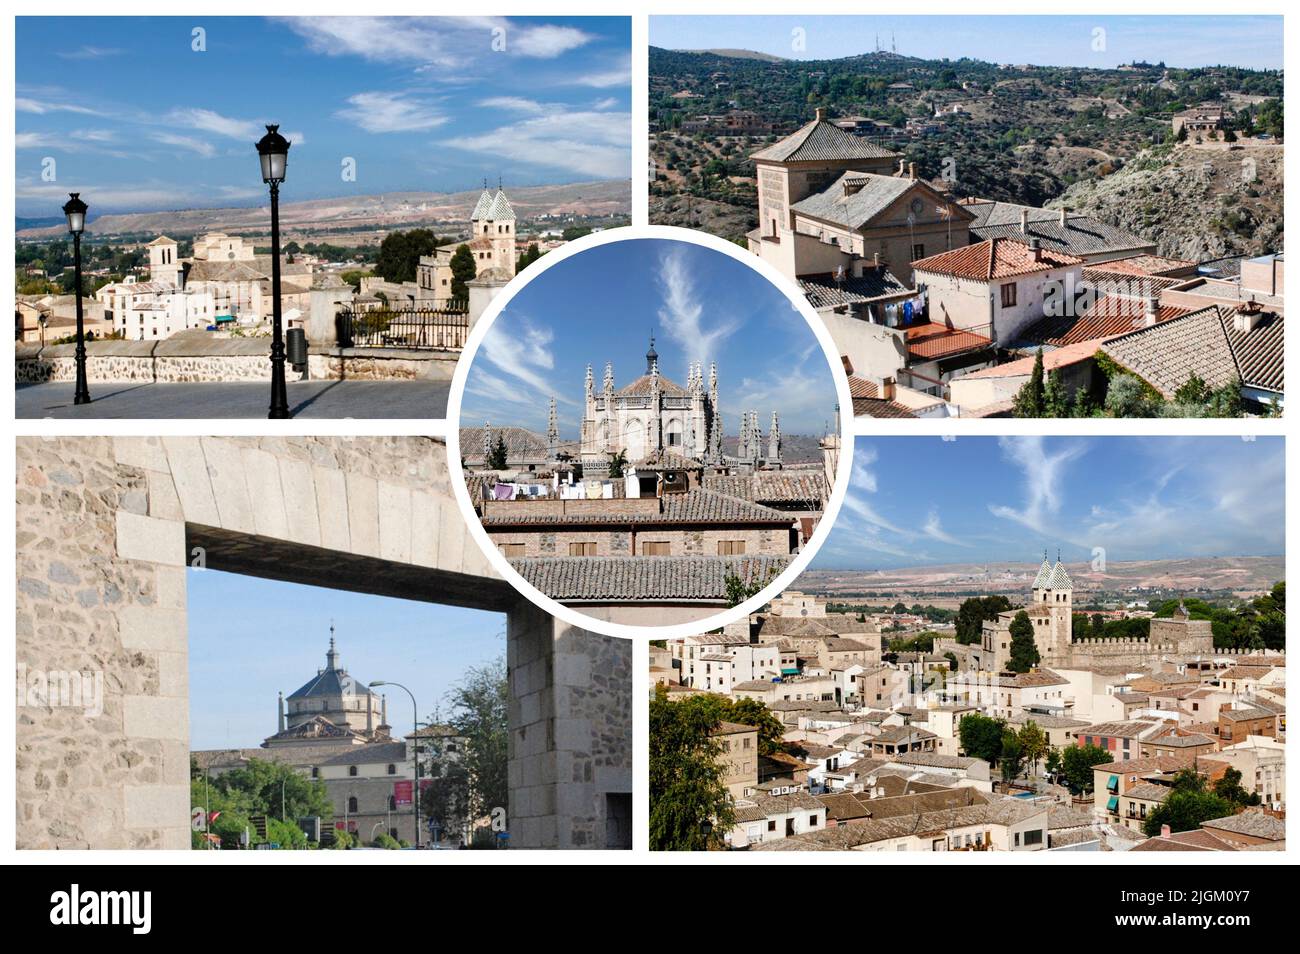 Toledo (España) es una antigua ciudad, capital de Castilla-La Mancha, famosa por sus monumentos medievales árabes, judíos y cristianos Foto de stock